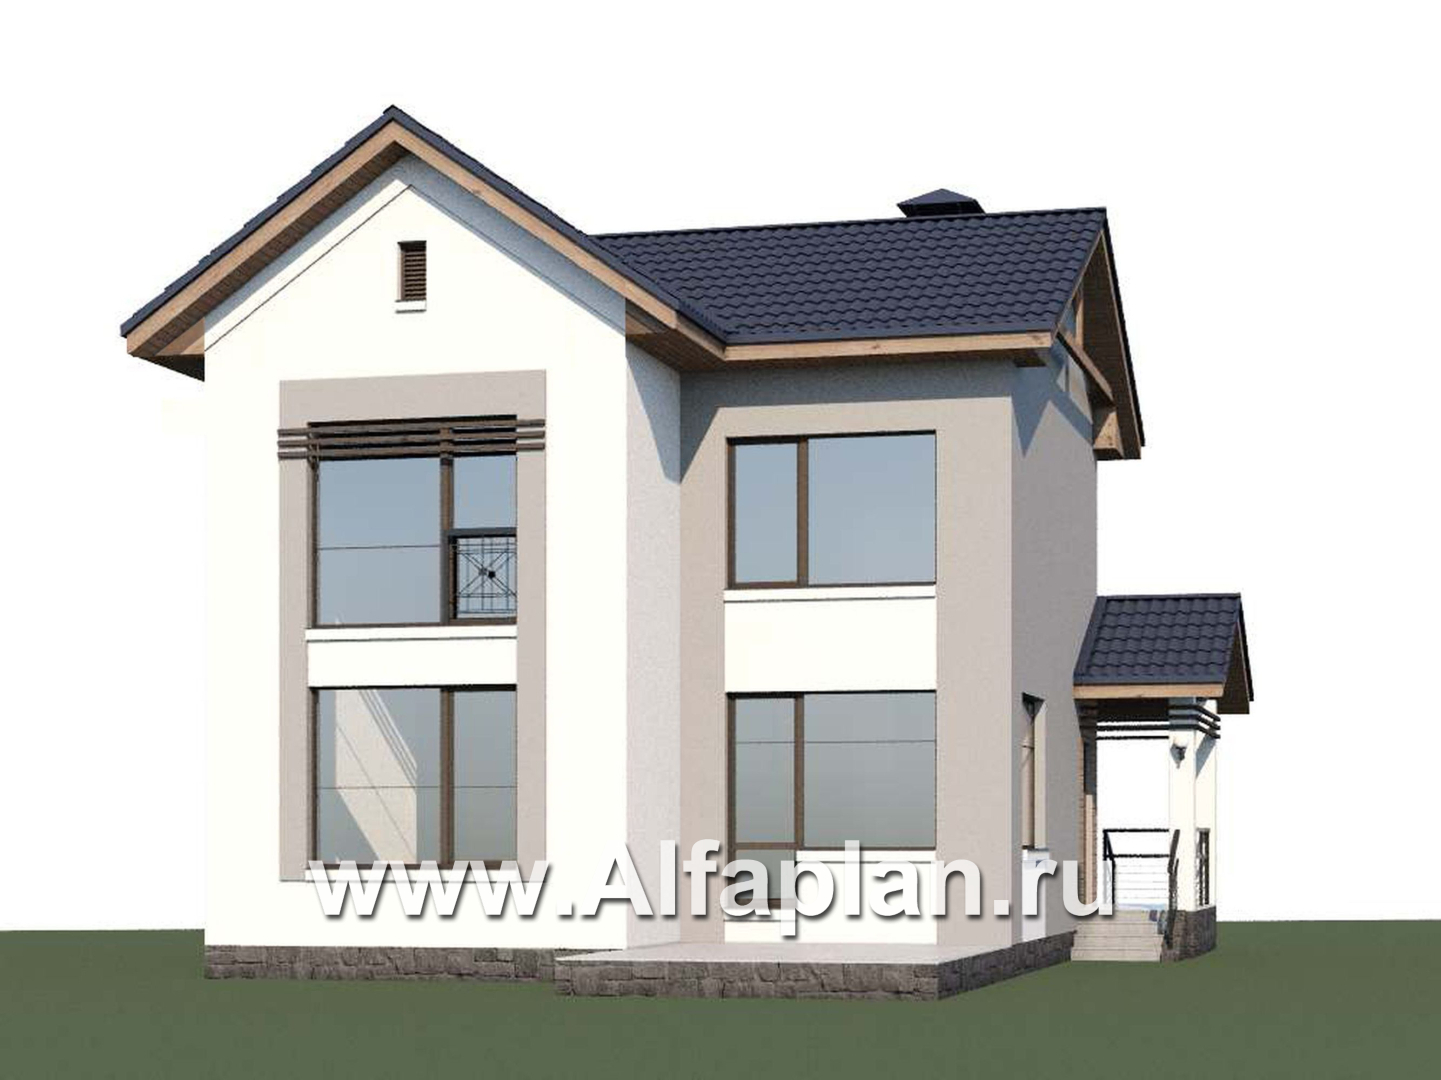 Проекты домов Альфаплан - «Каюткомпания» - экономичный дом для небольшой семьи и маленького участка - дополнительное изображение №1